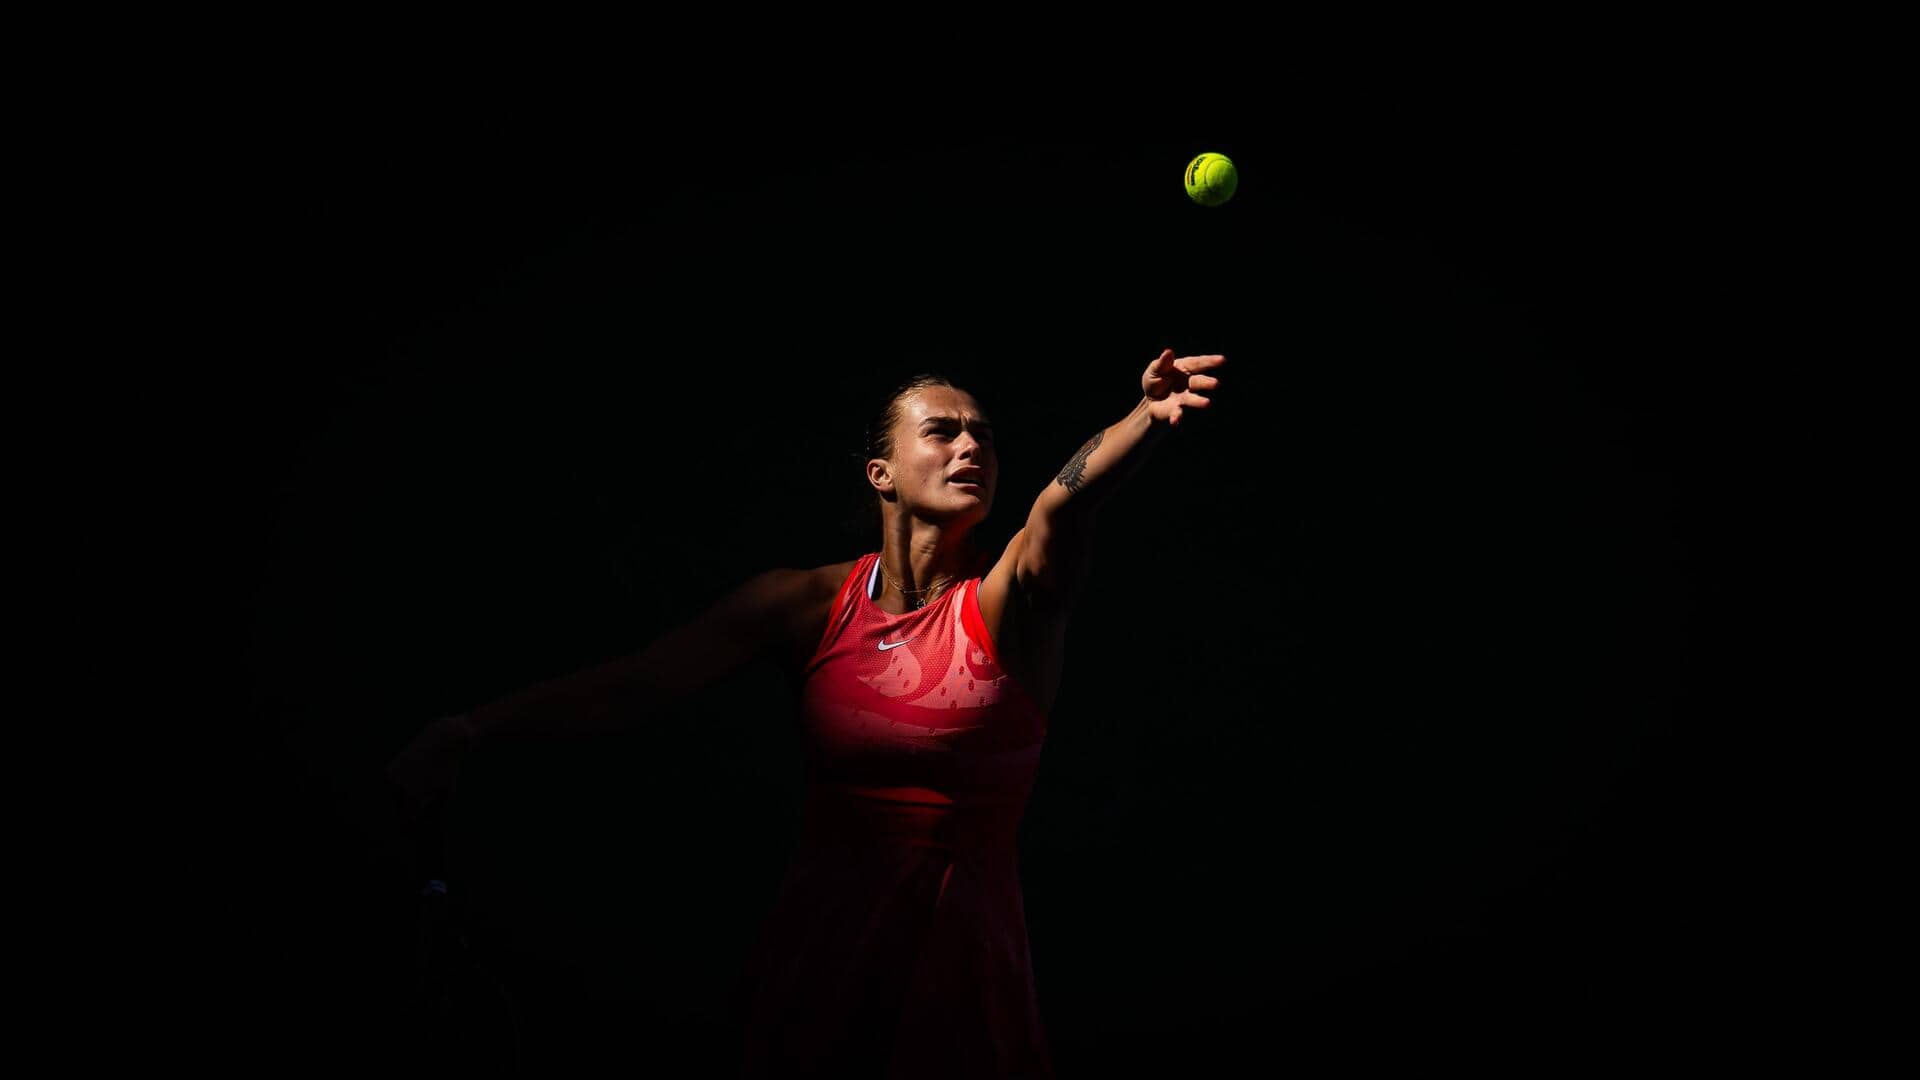 US Open: Aryna Sabalenka claims this massive WTA Tour record